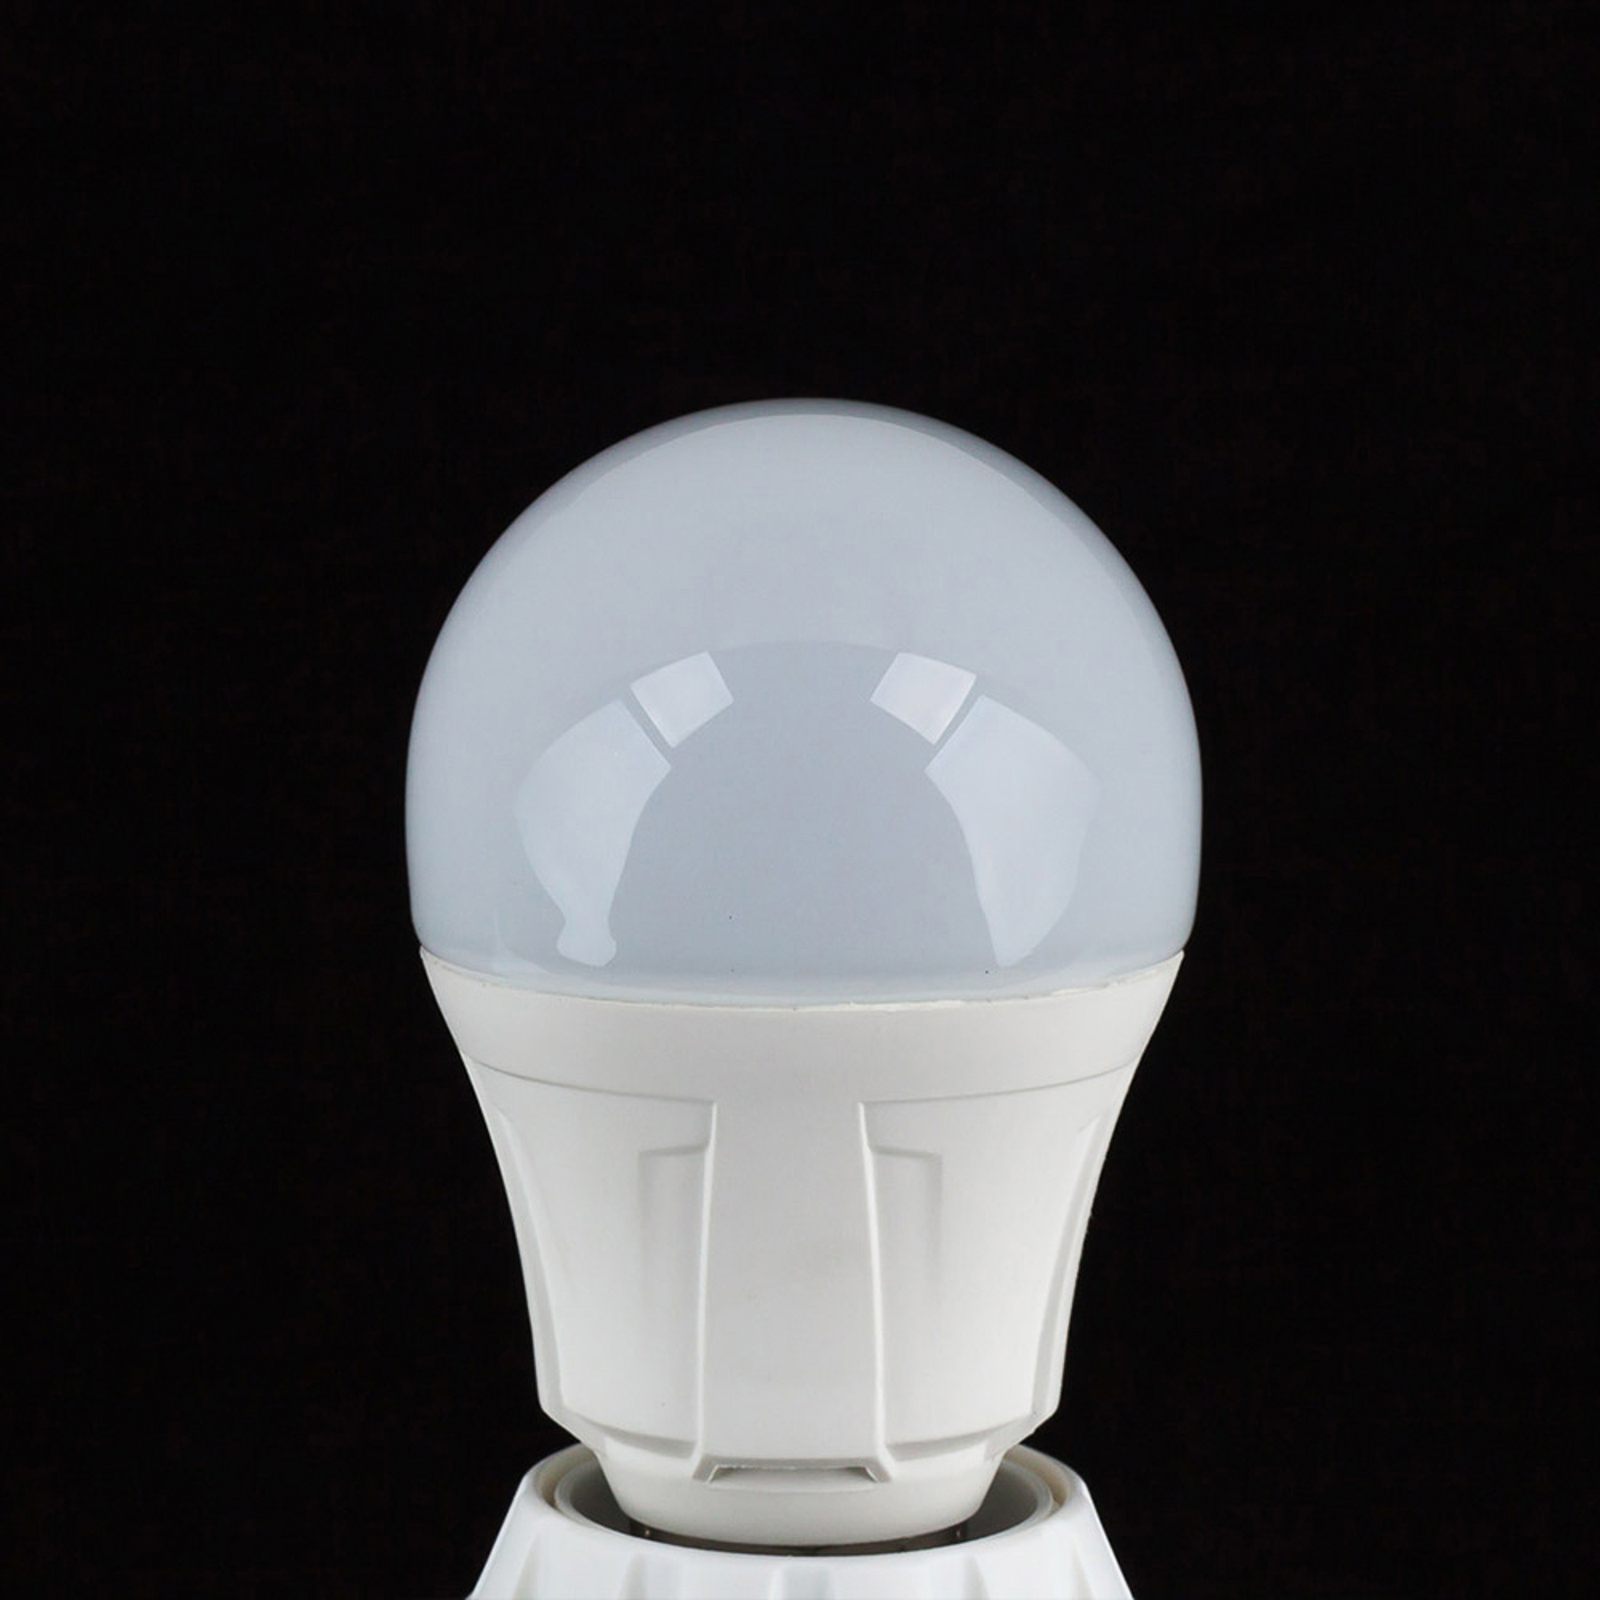 LED lamp gloeilampvorm E27 11W 830 2 per set